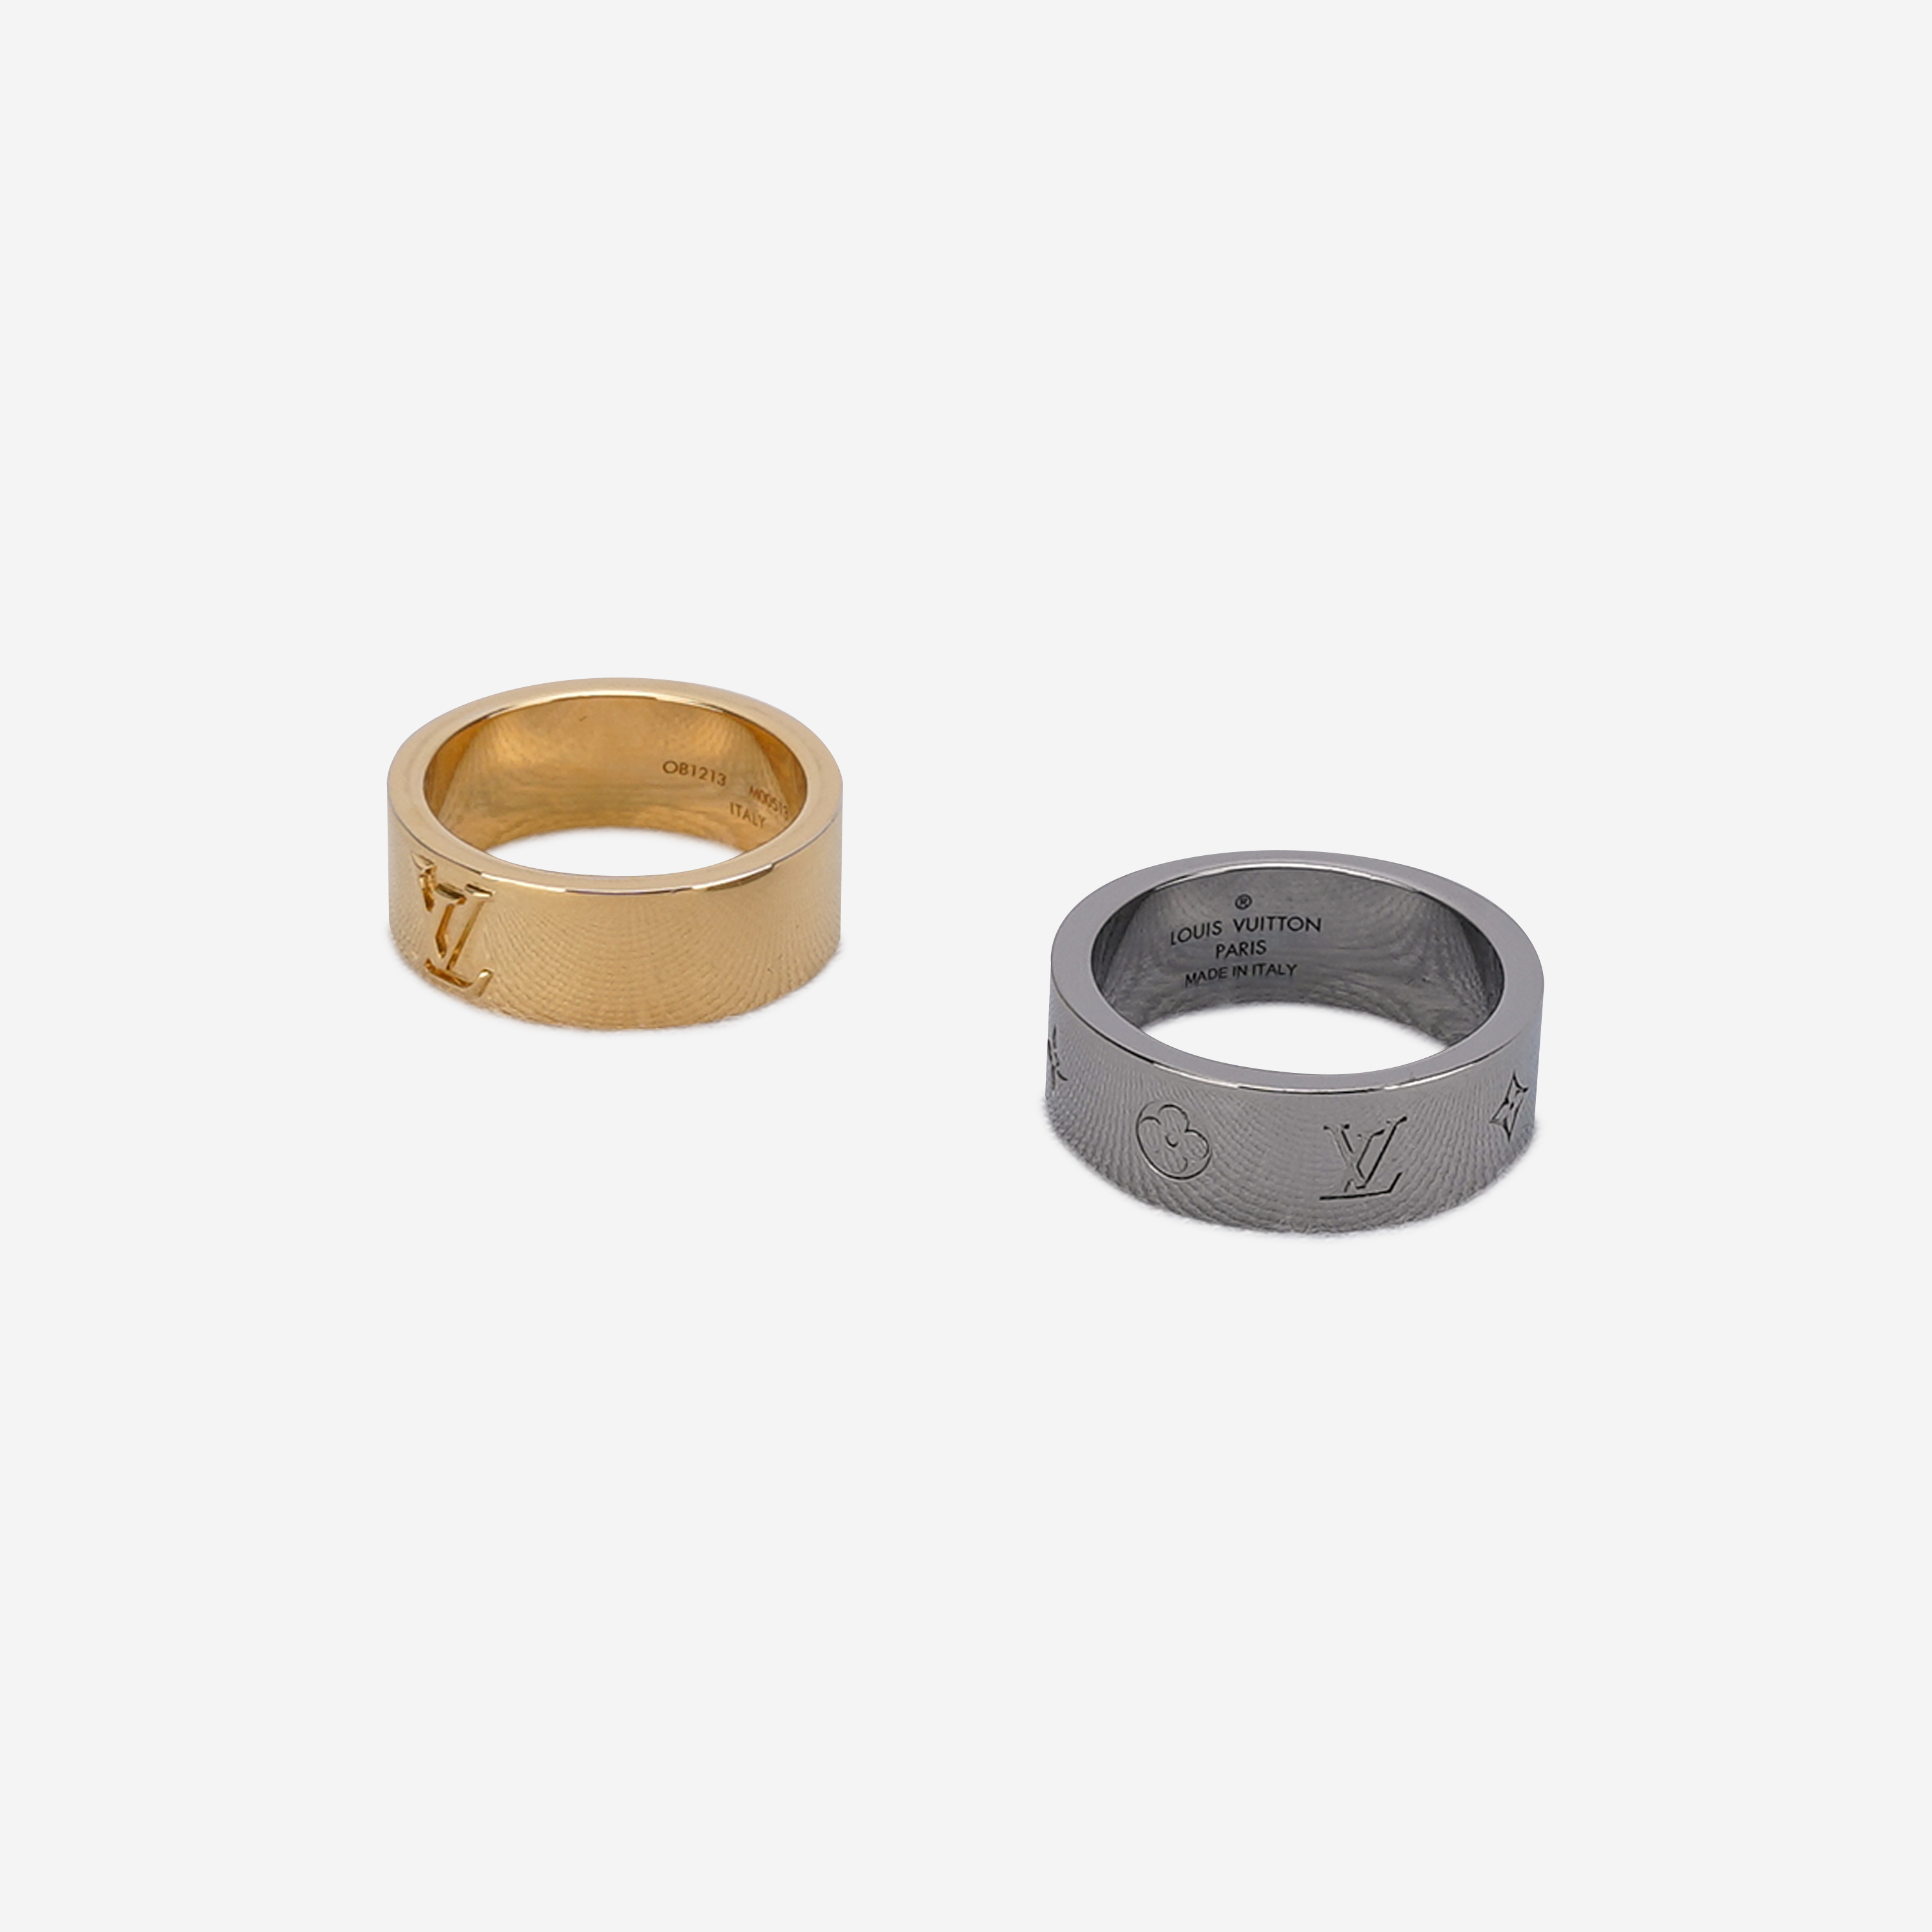 Louis Vuitton M00513 Instinct Set of 2 Rings Size Medium